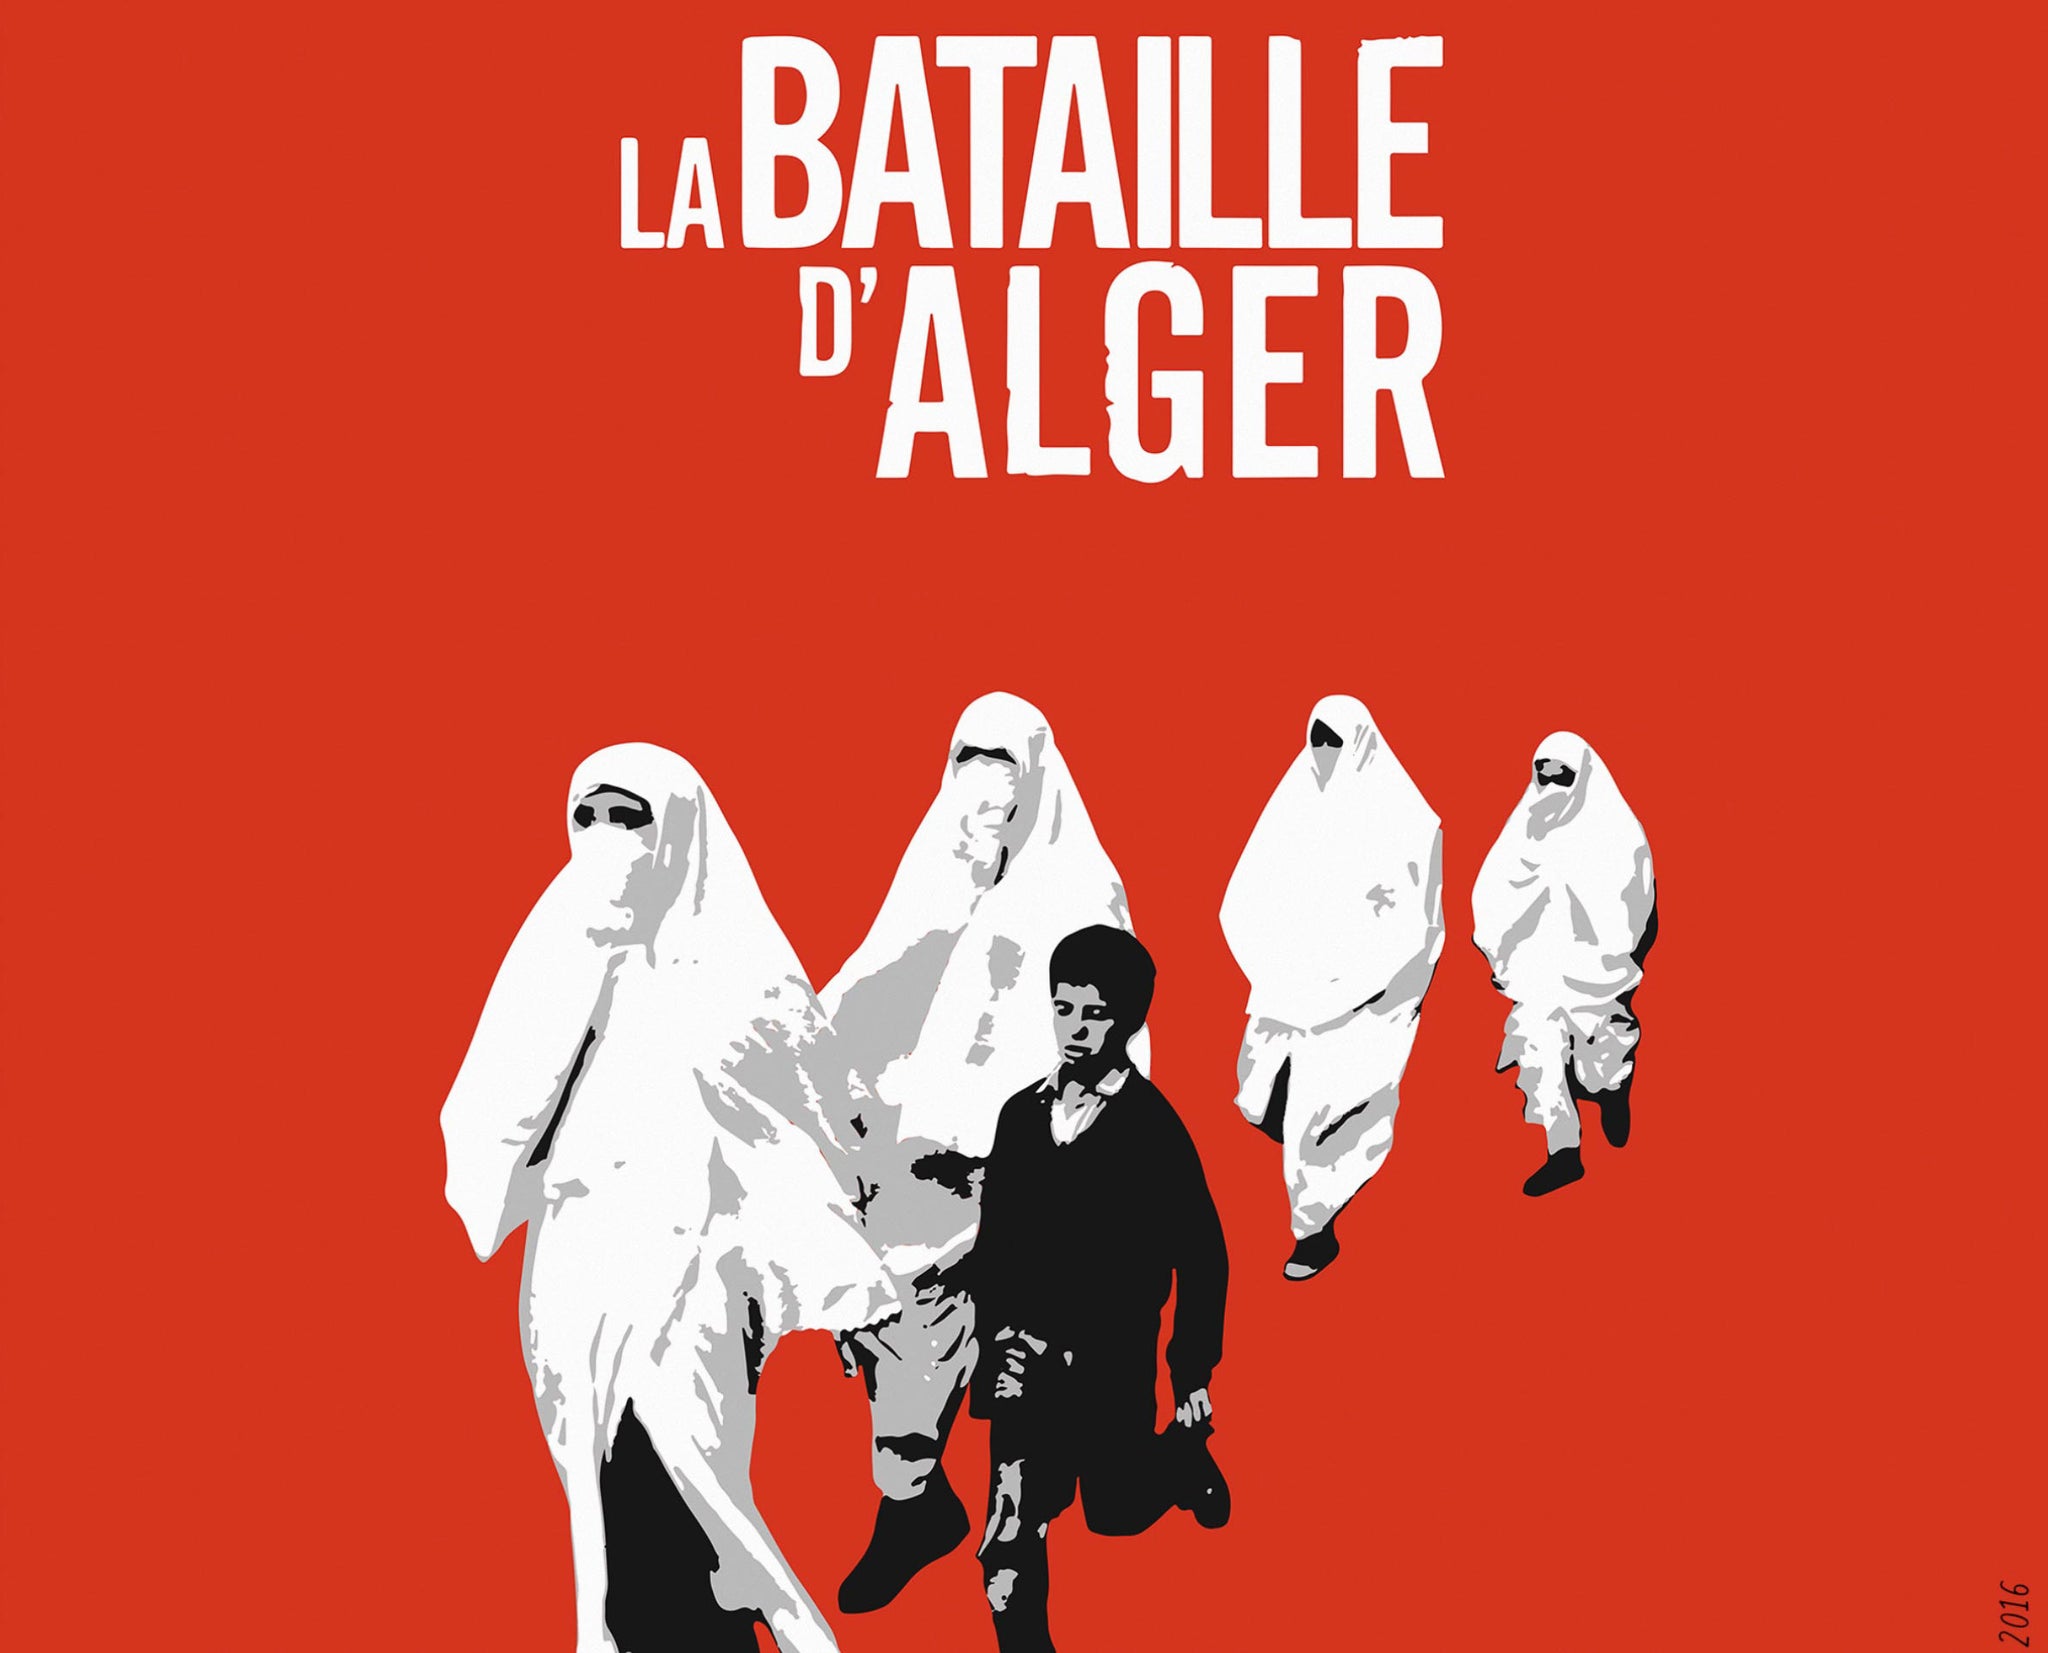 La bataille d'Alger - معركة الجزائر